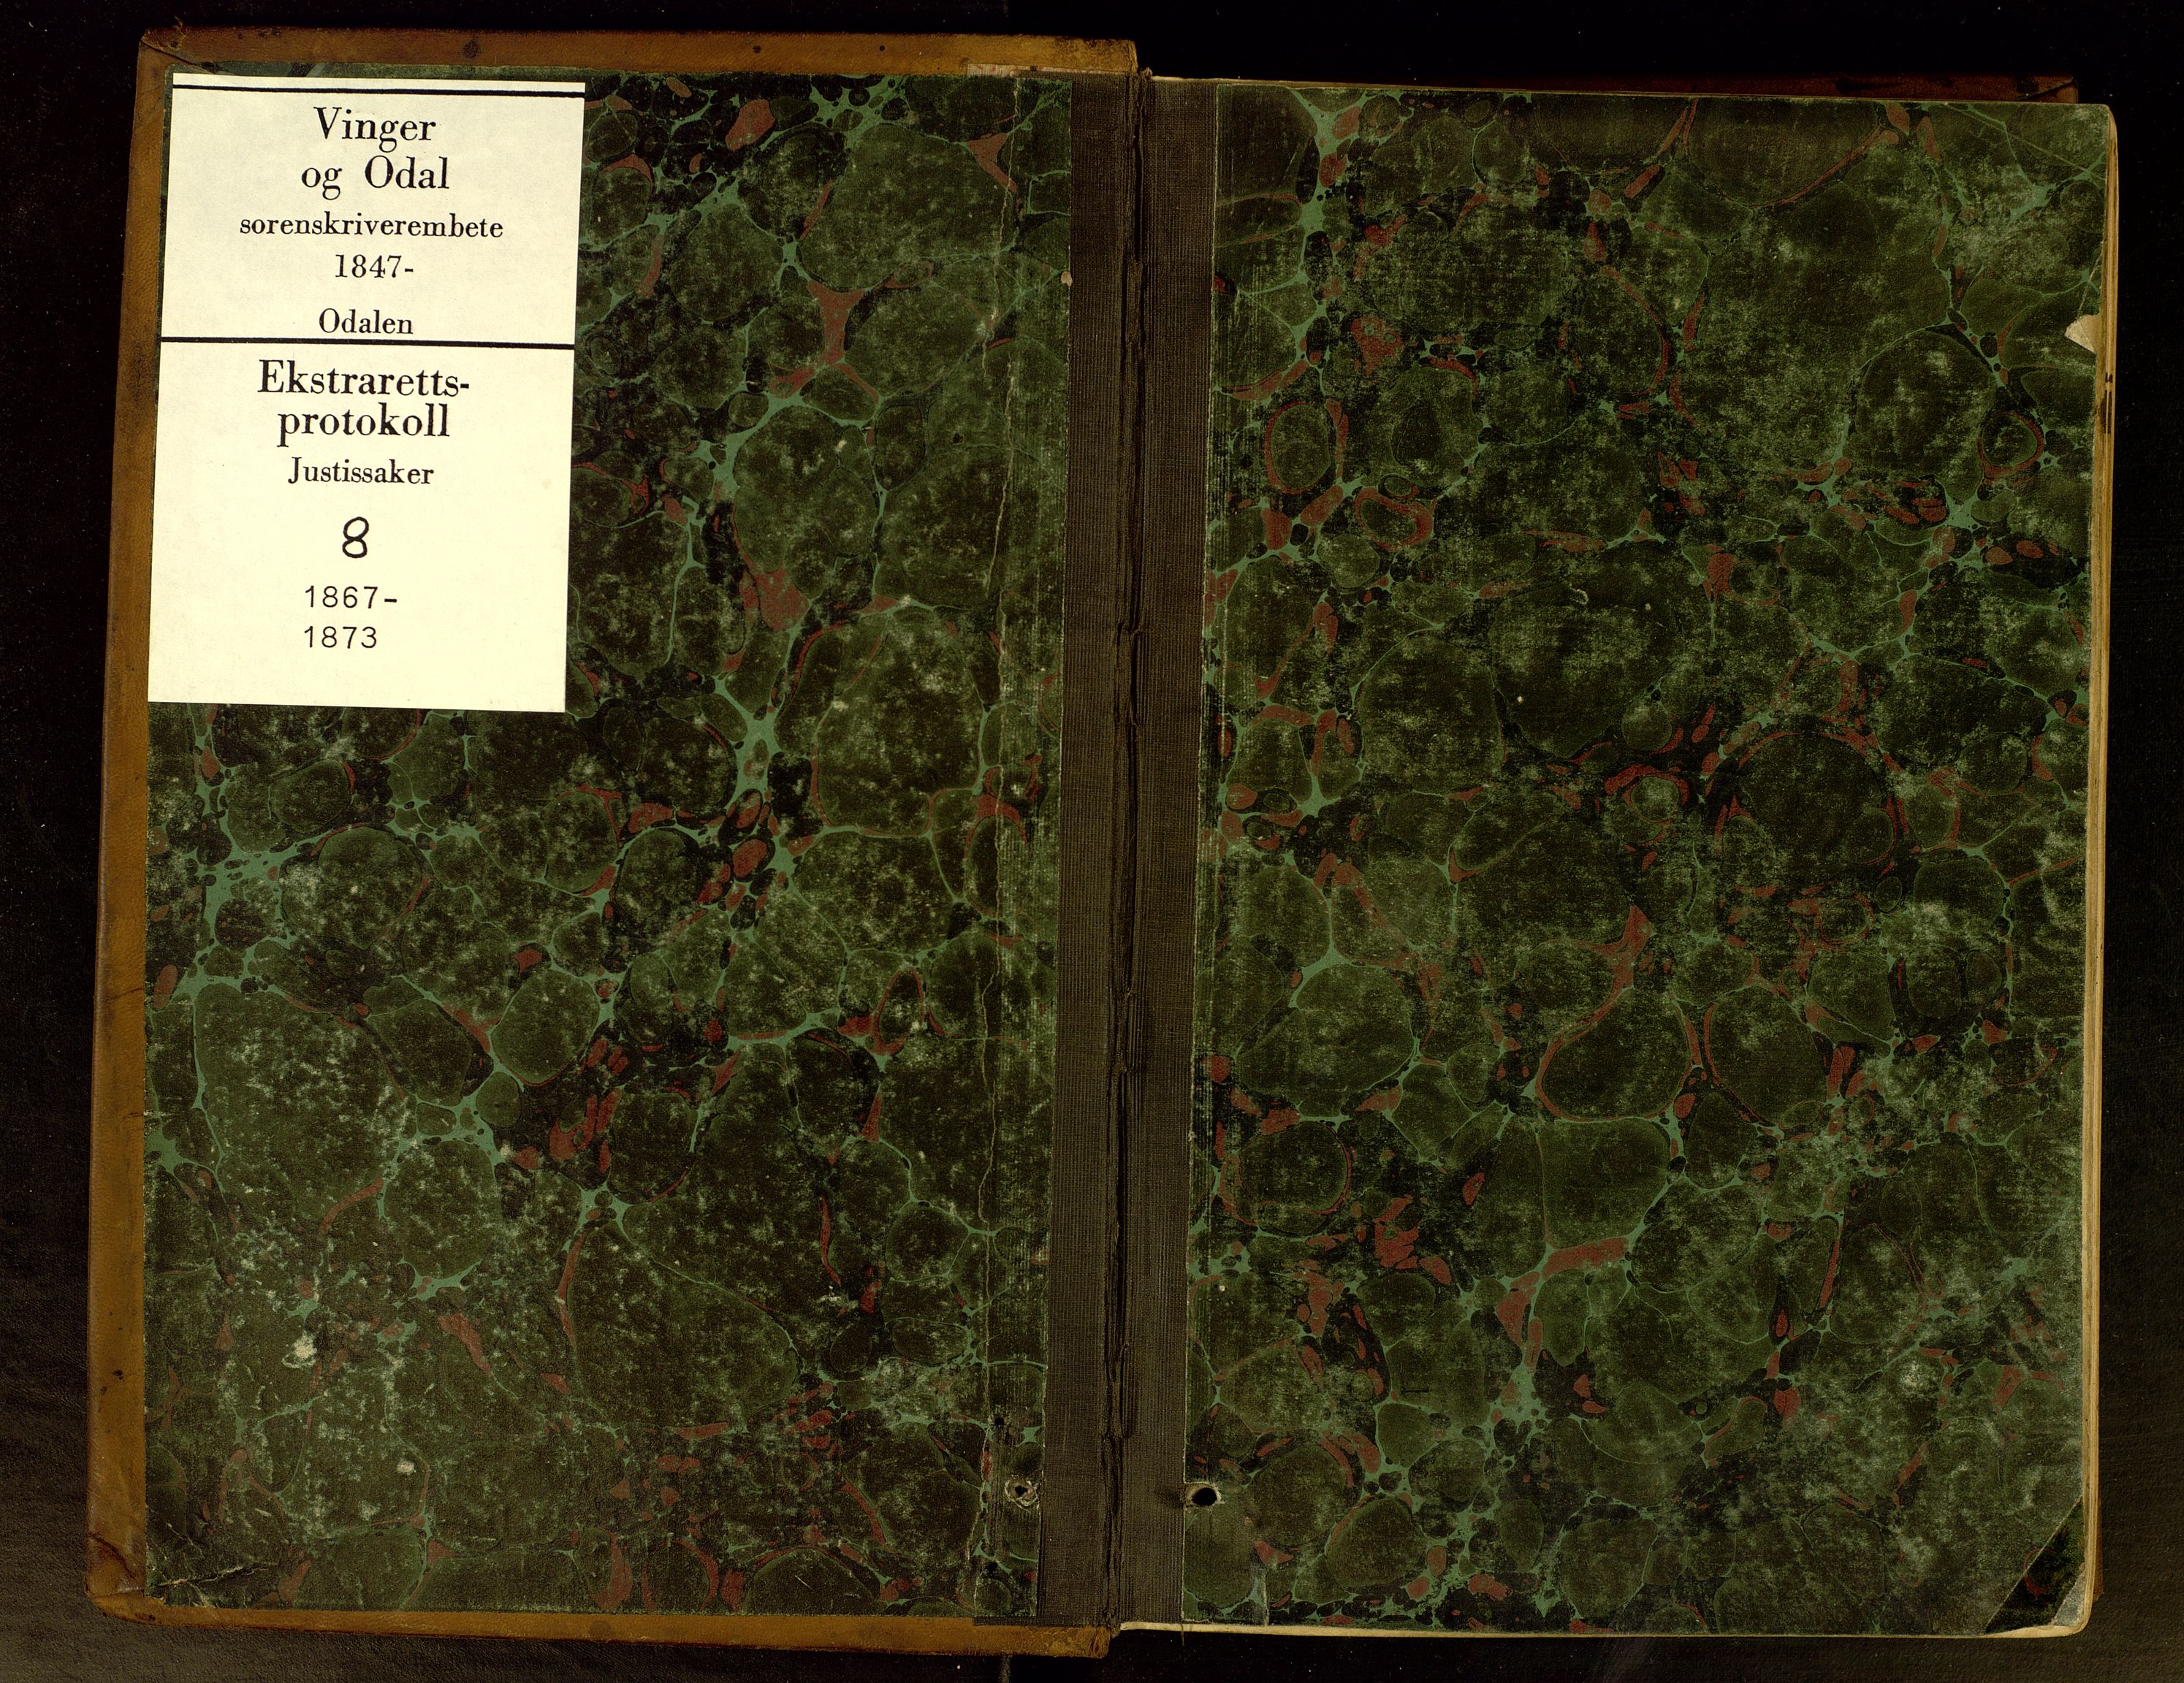 Vinger og Odal sorenskriveri, SAH/TING-022/G/Gc/Gca/L0008: Ekstrarettsprotokoll - Odal, 1867-1873